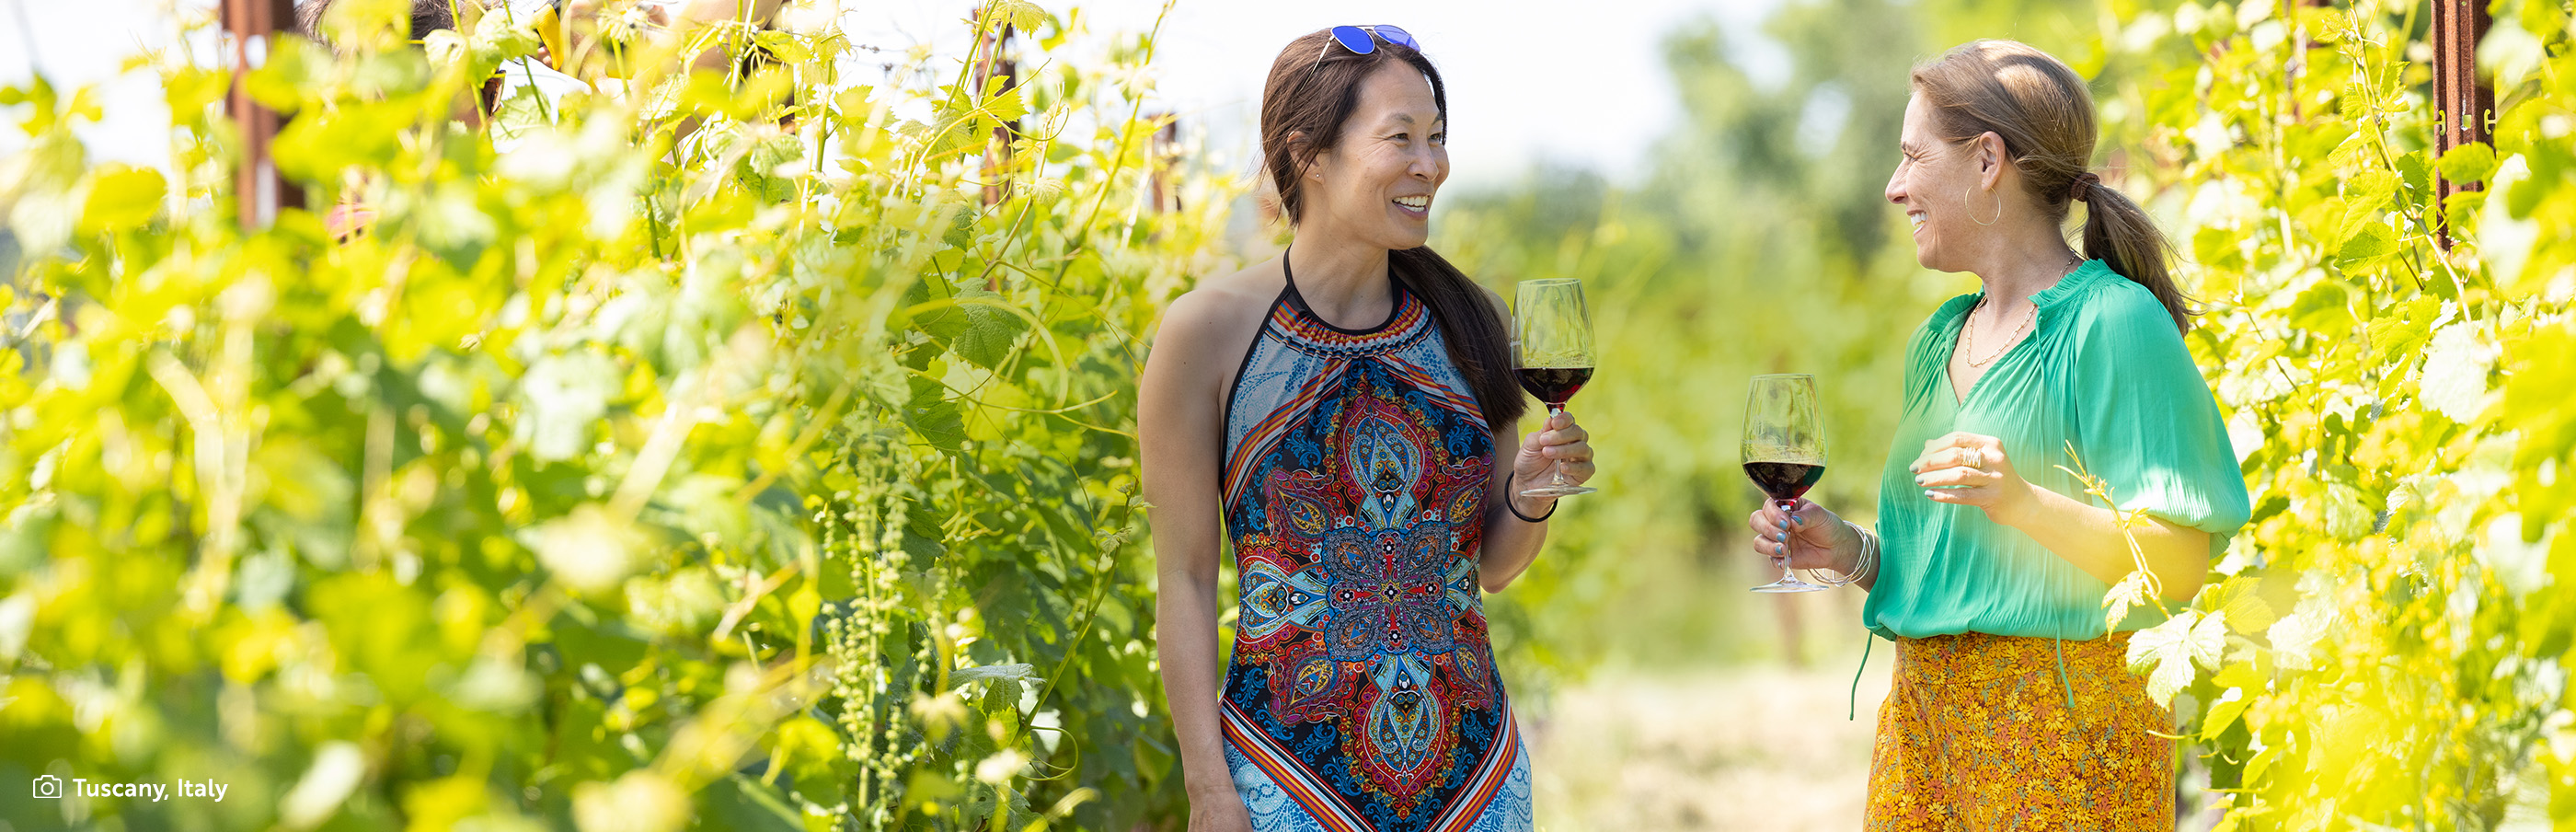 Two women drinking wine in a vineyard